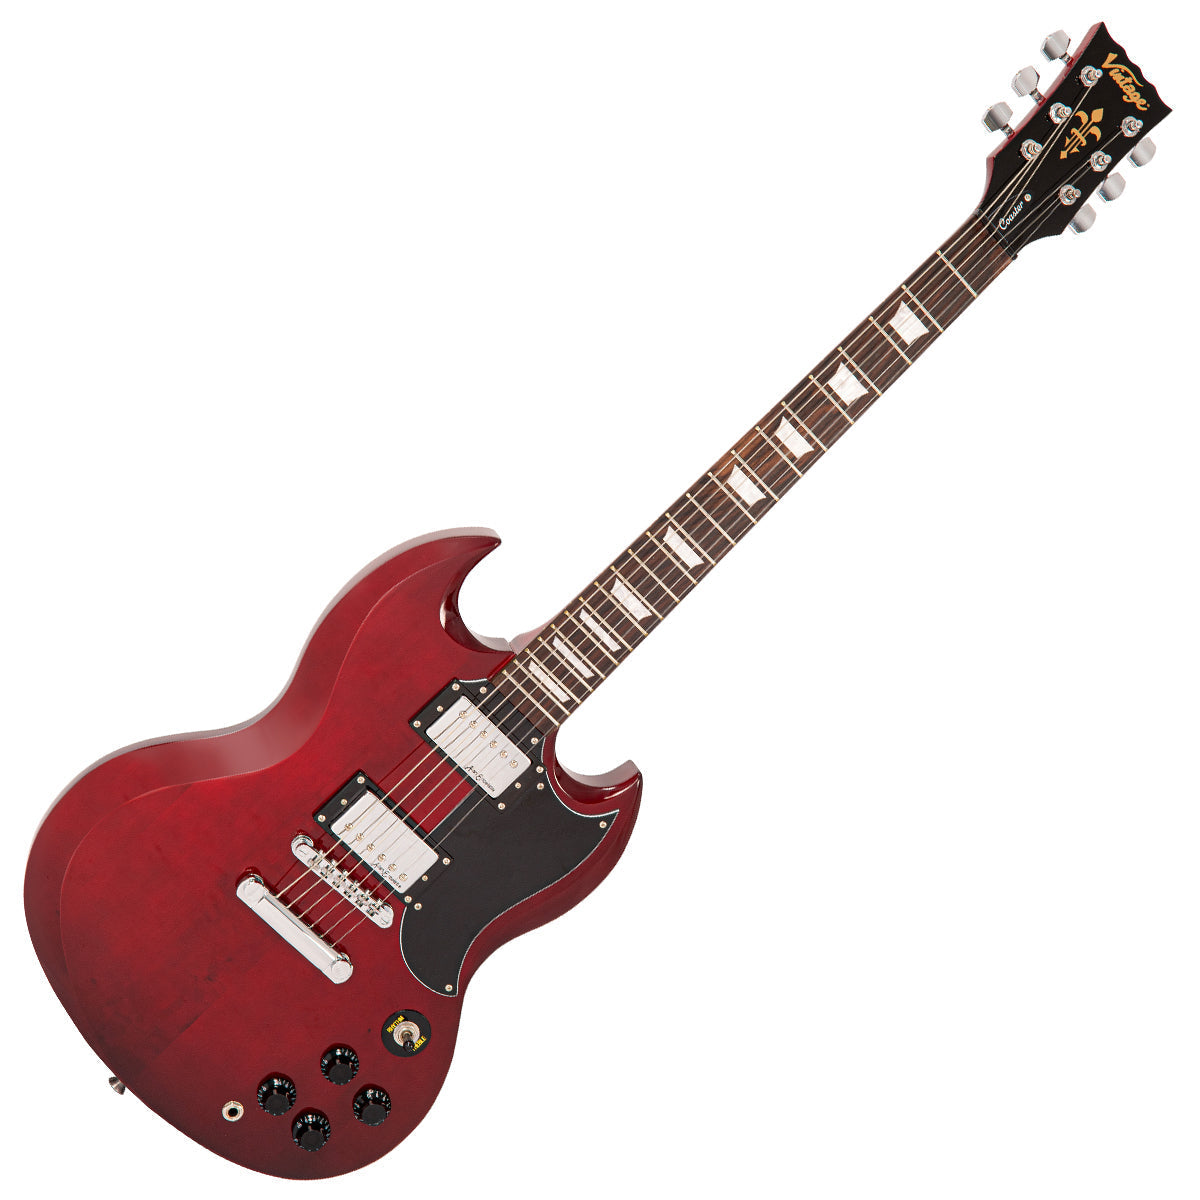 Vintage V69 Coaster Series Electric Guitar ~ Cherry Red, Electric Guitar for sale at Richards Guitars.